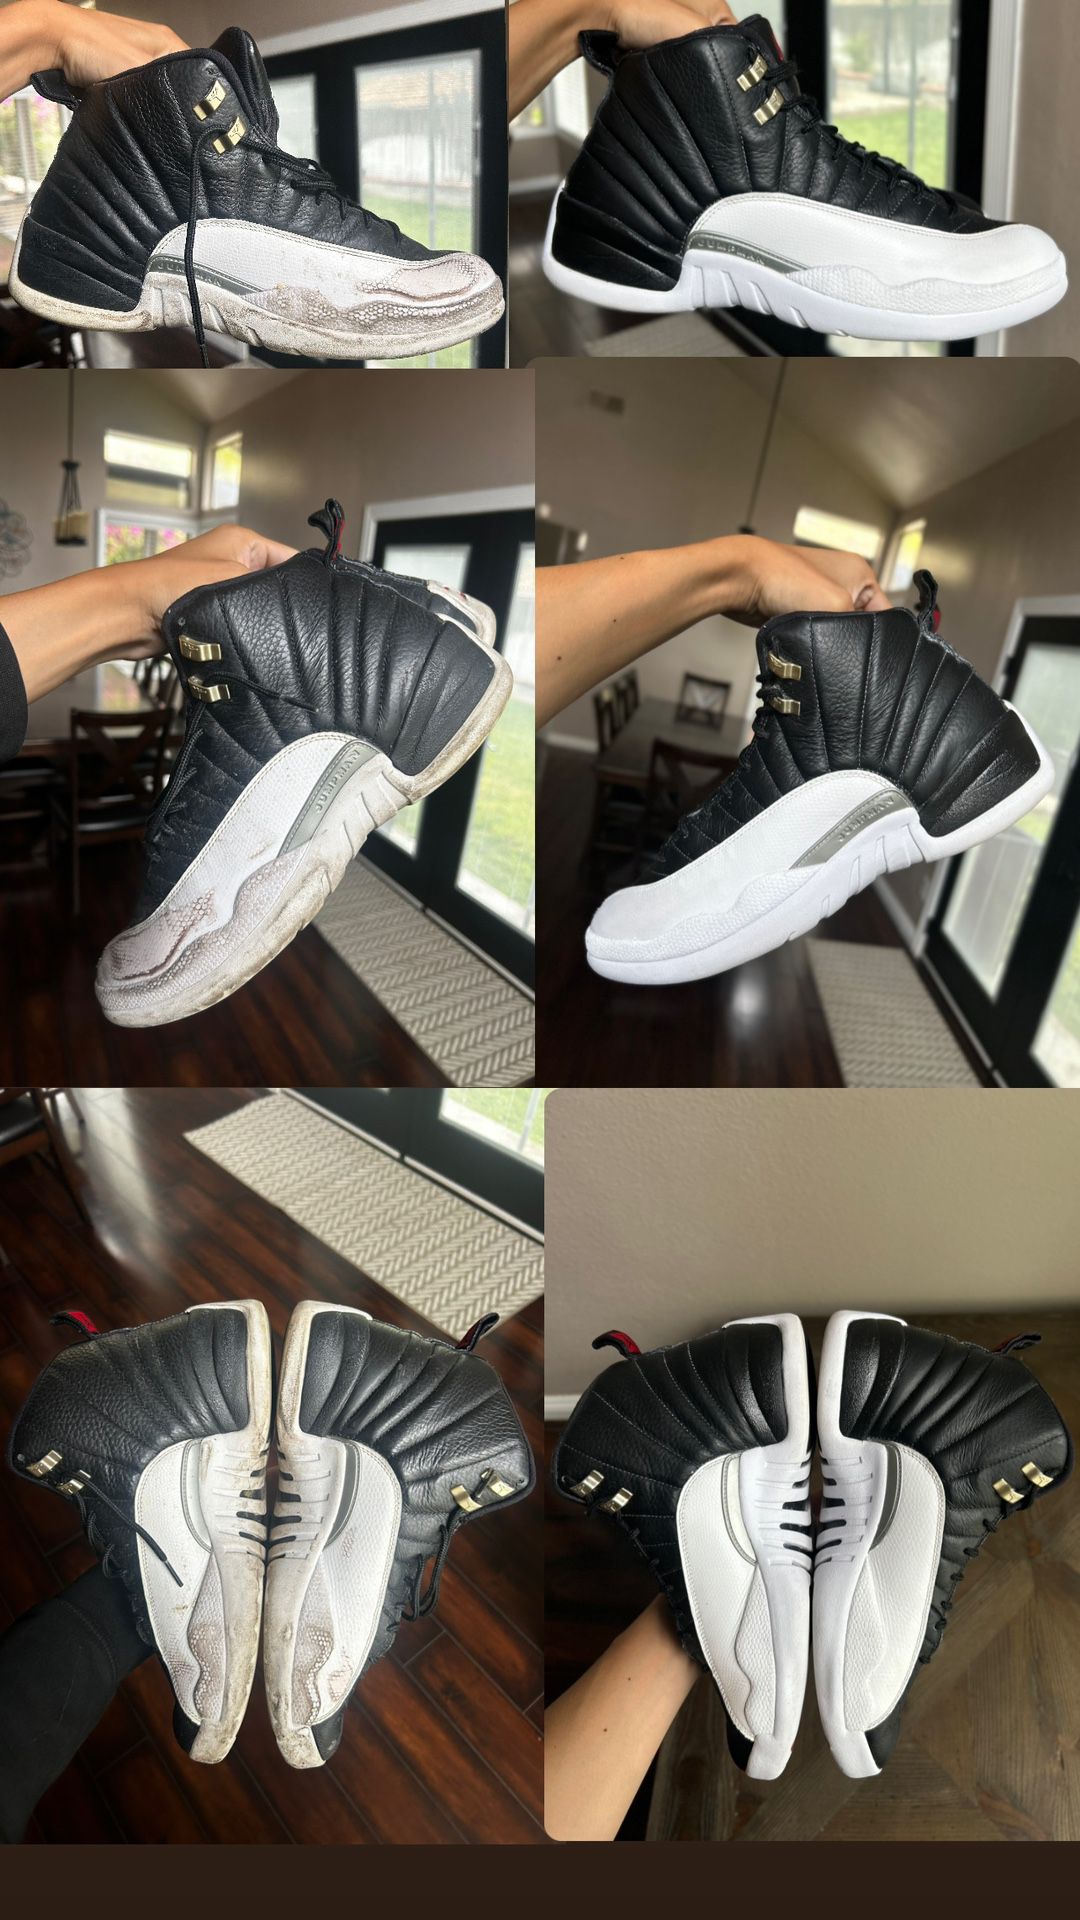 Sneaker Restoration/ Nike Repair / Jordan Cleaning 